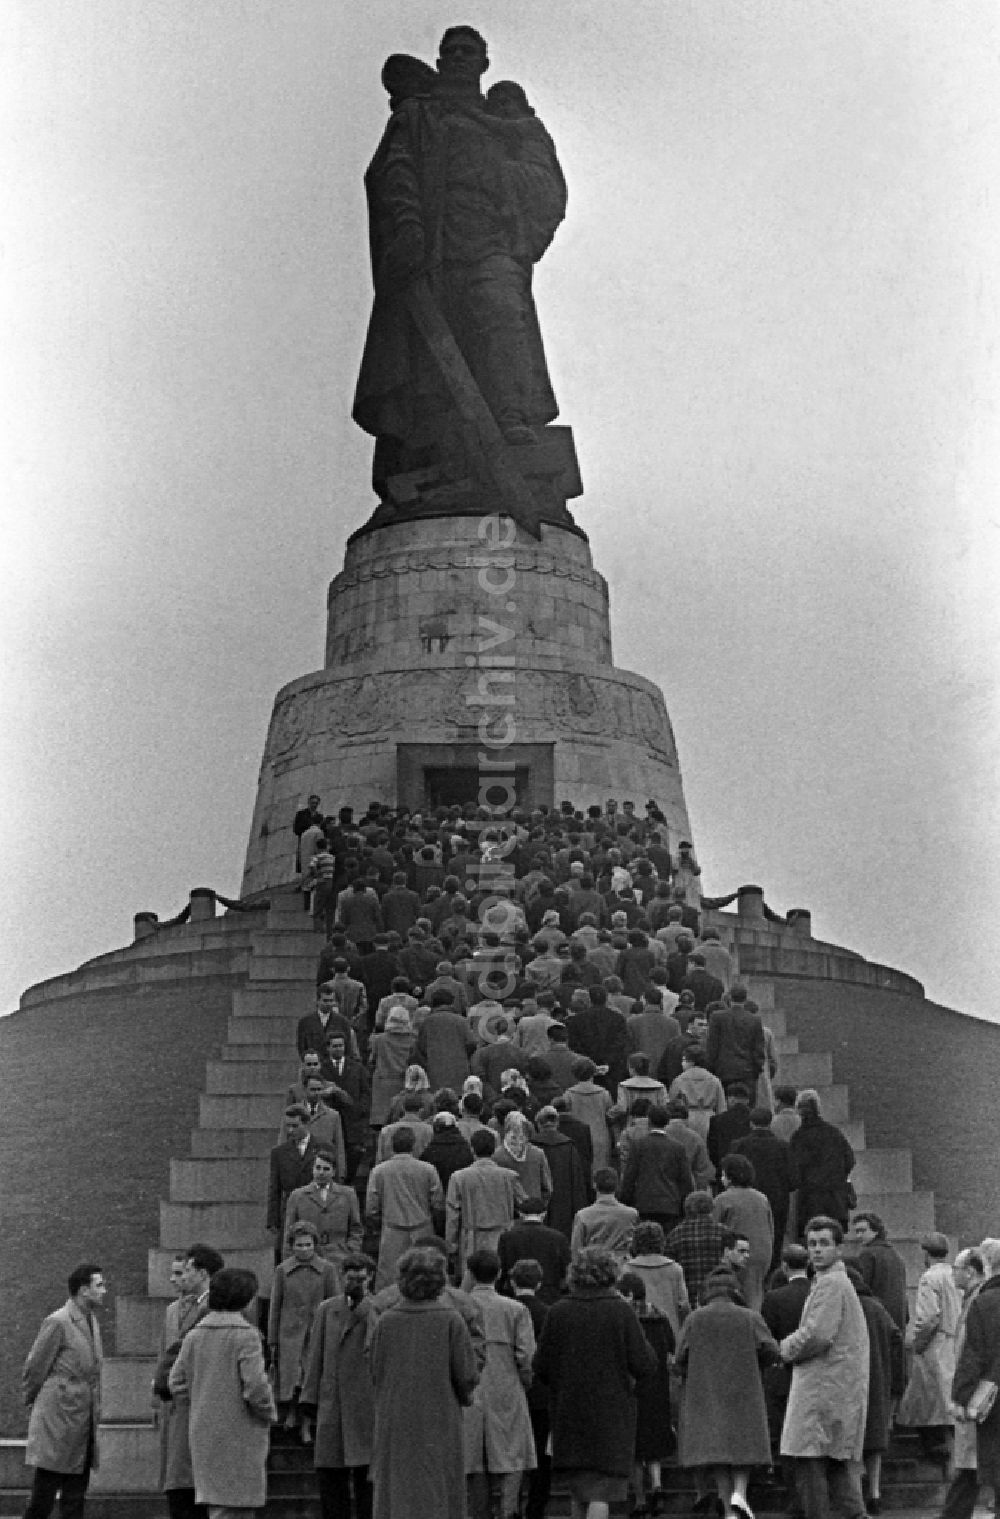 DDR-Fotoarchiv: Berlin - Menschen gedenken dem Tag der Befreiung am Sowjetischen Ehrenmal im Treptower Park in Berlin auf dem Gebiet in der DDR